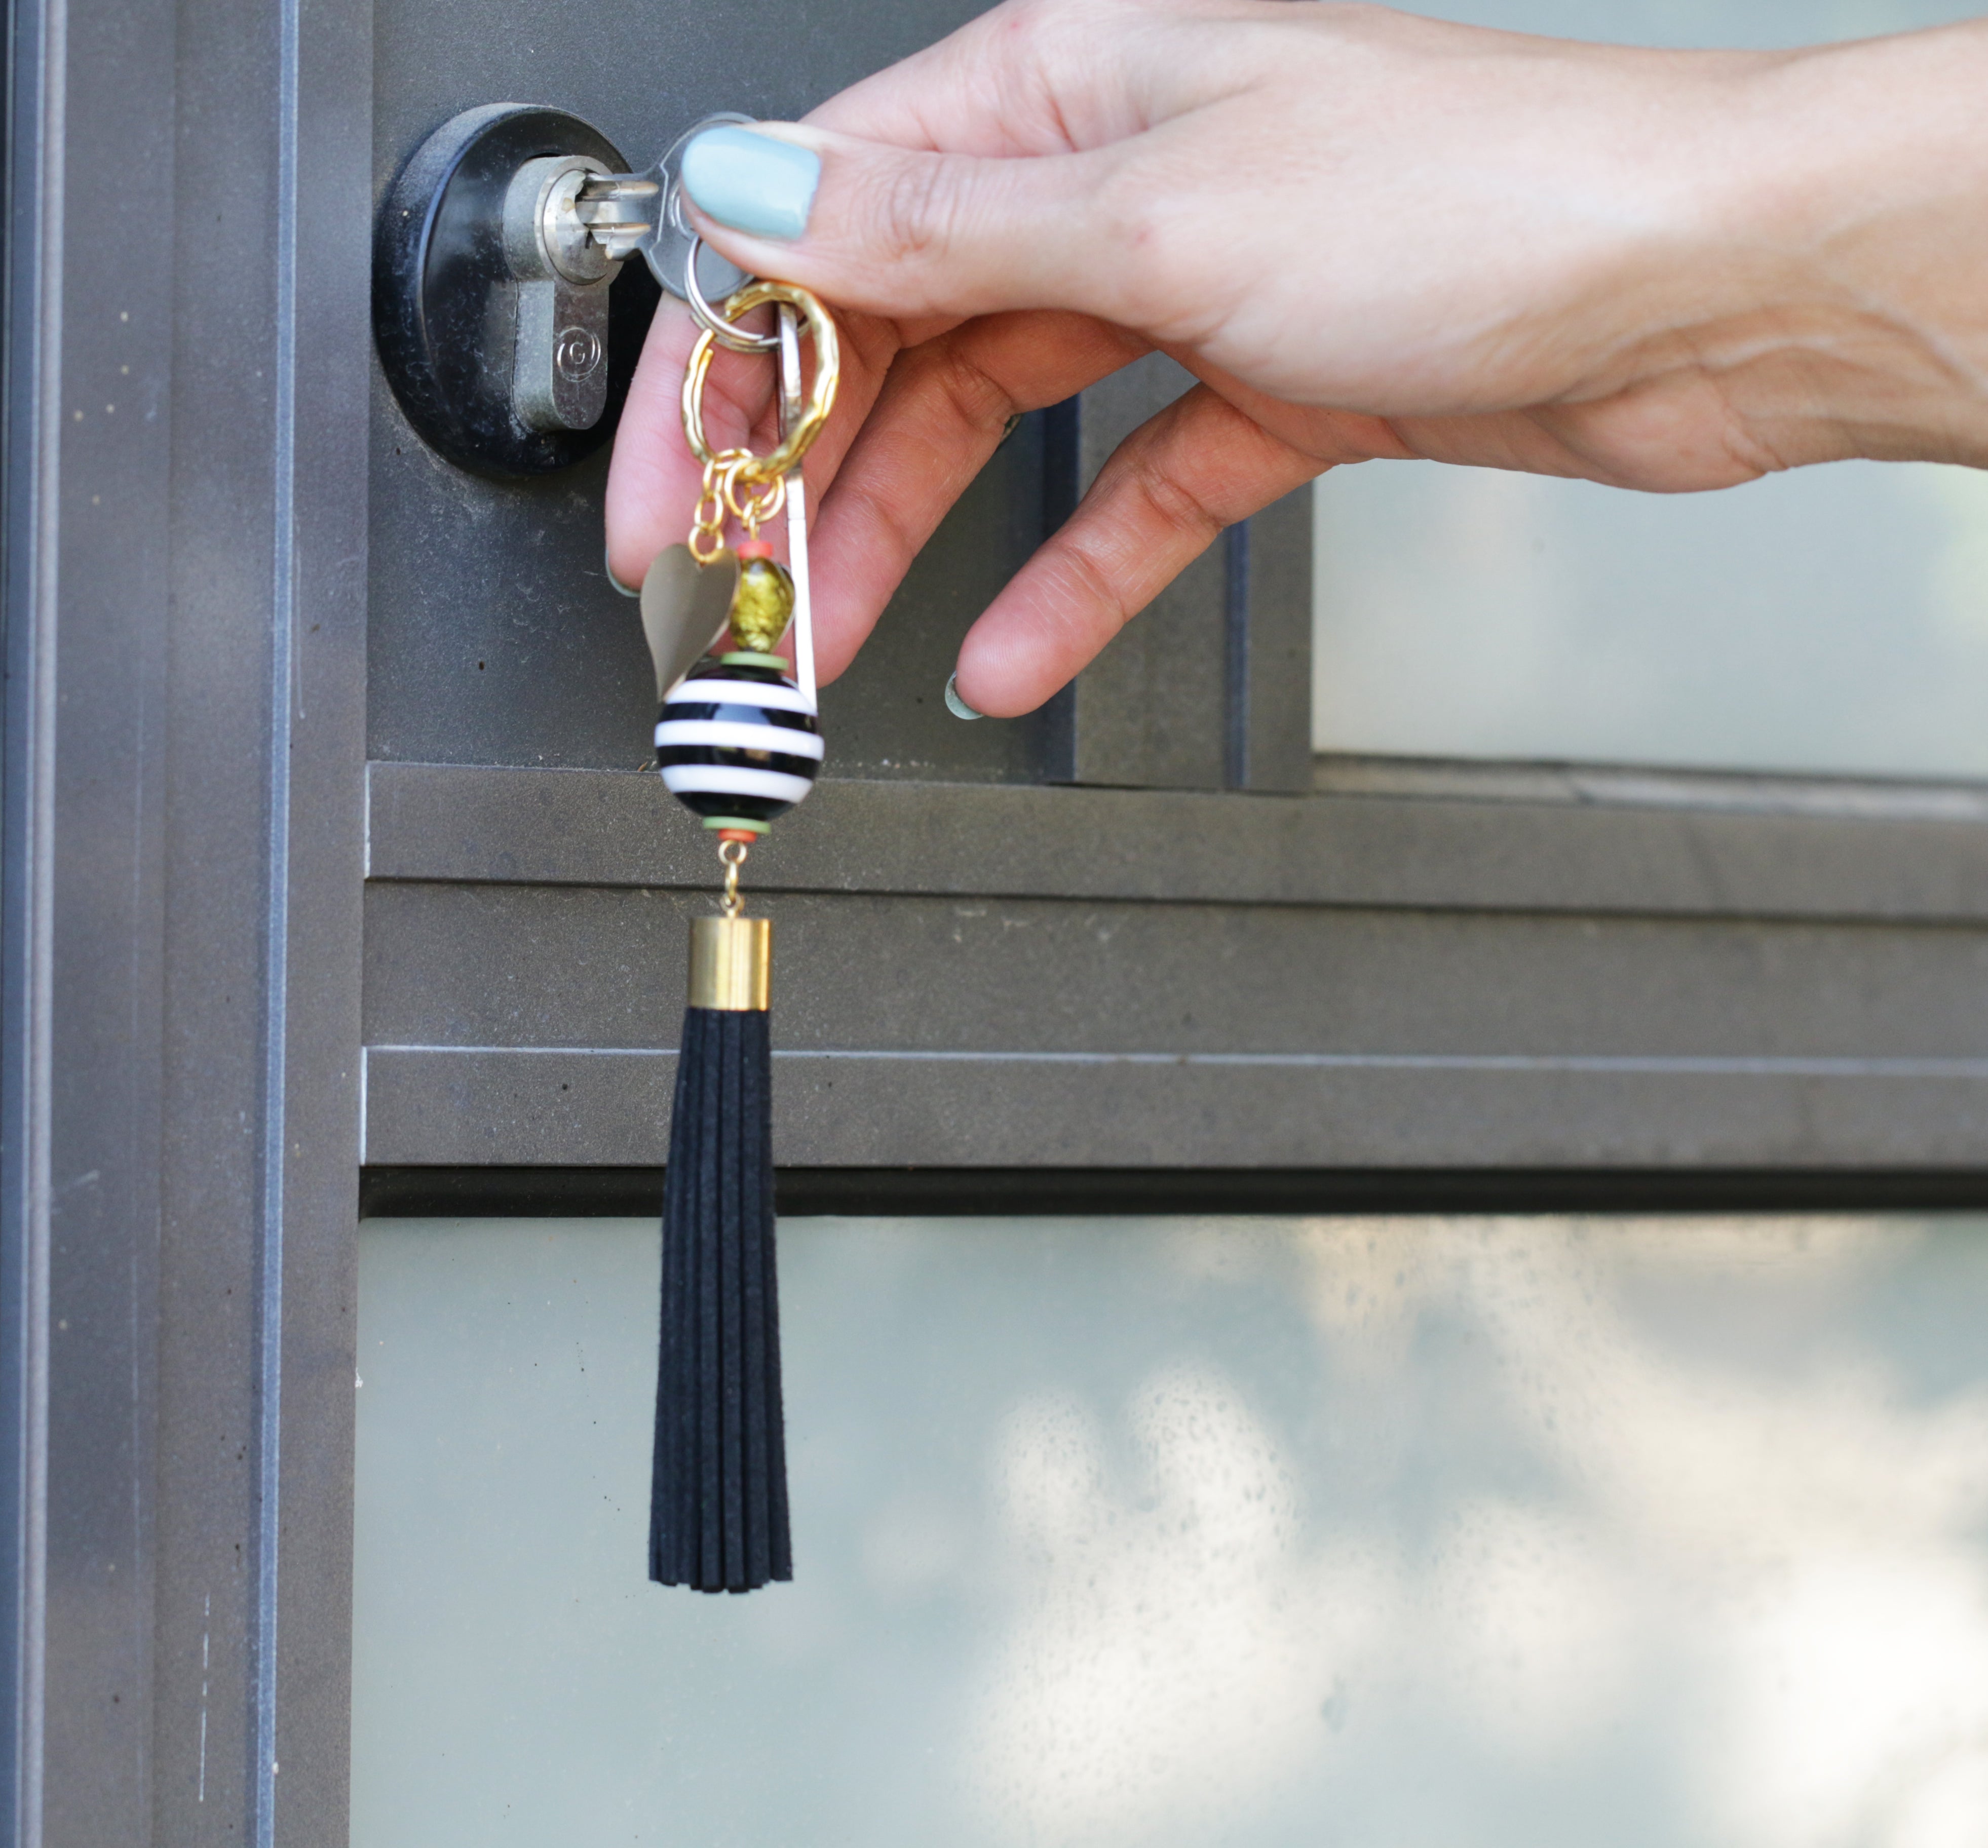 מחזיק מפתחות מודרני וצבעוני בעבודת יד כמתנה לחבר או למשפחה.